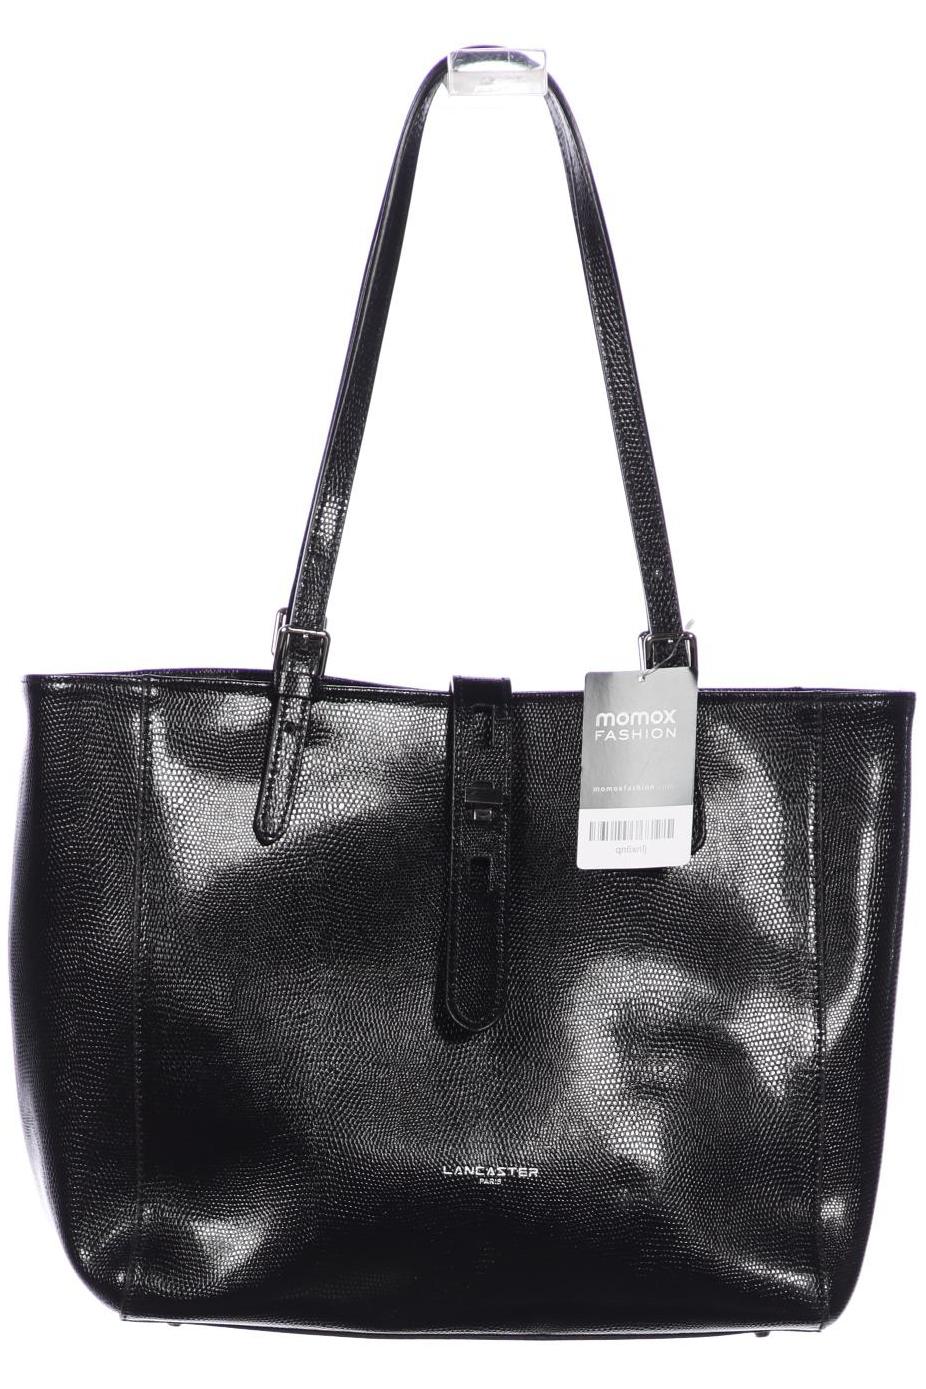 LANCASTER Damen Handtasche, schwarz von Lancaster